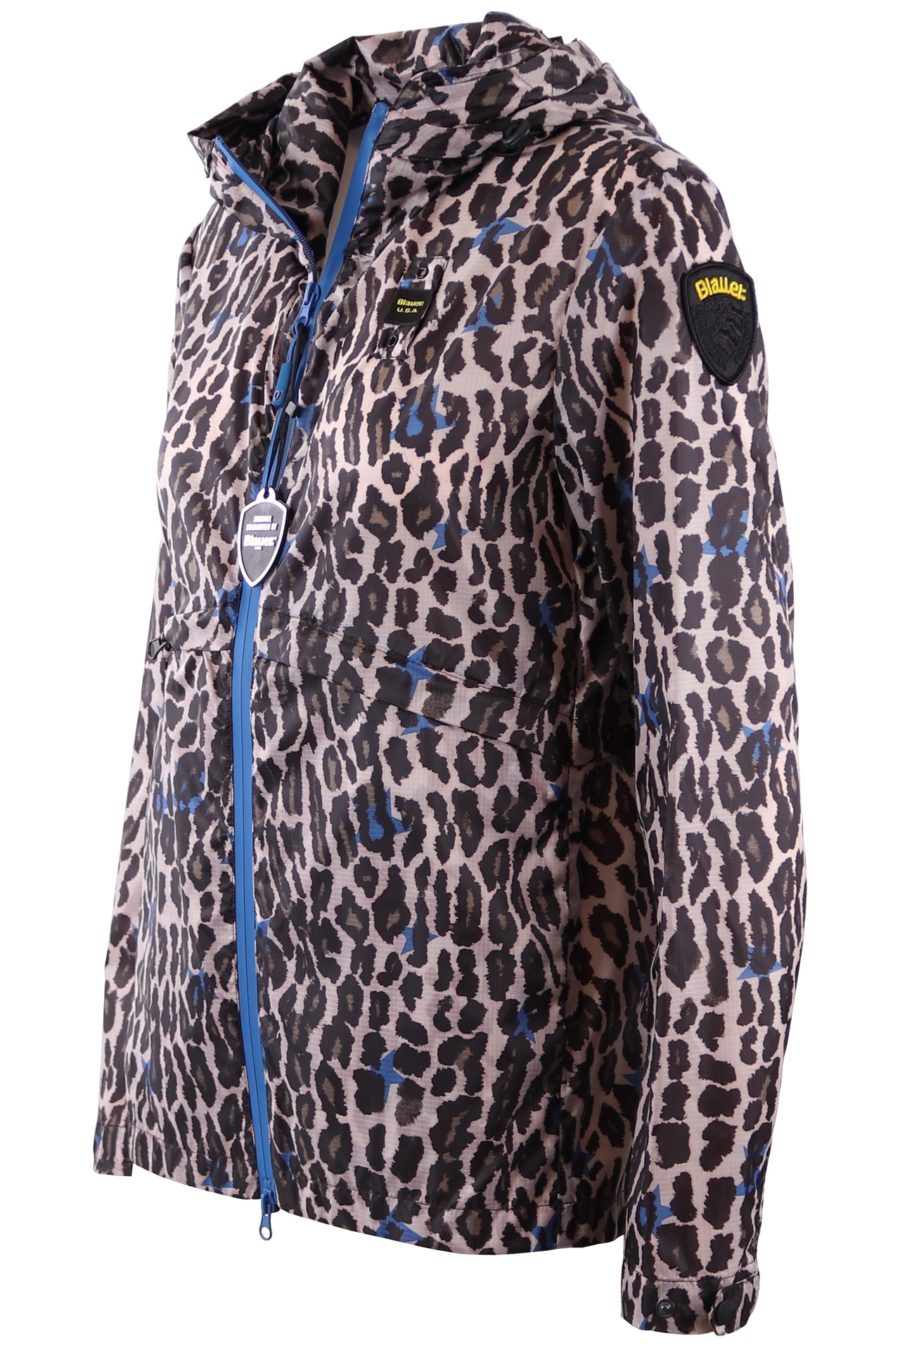 Blauer Leopard print jacket - 4e5e44b7f741eb3cb5444245628923041d9cddd5